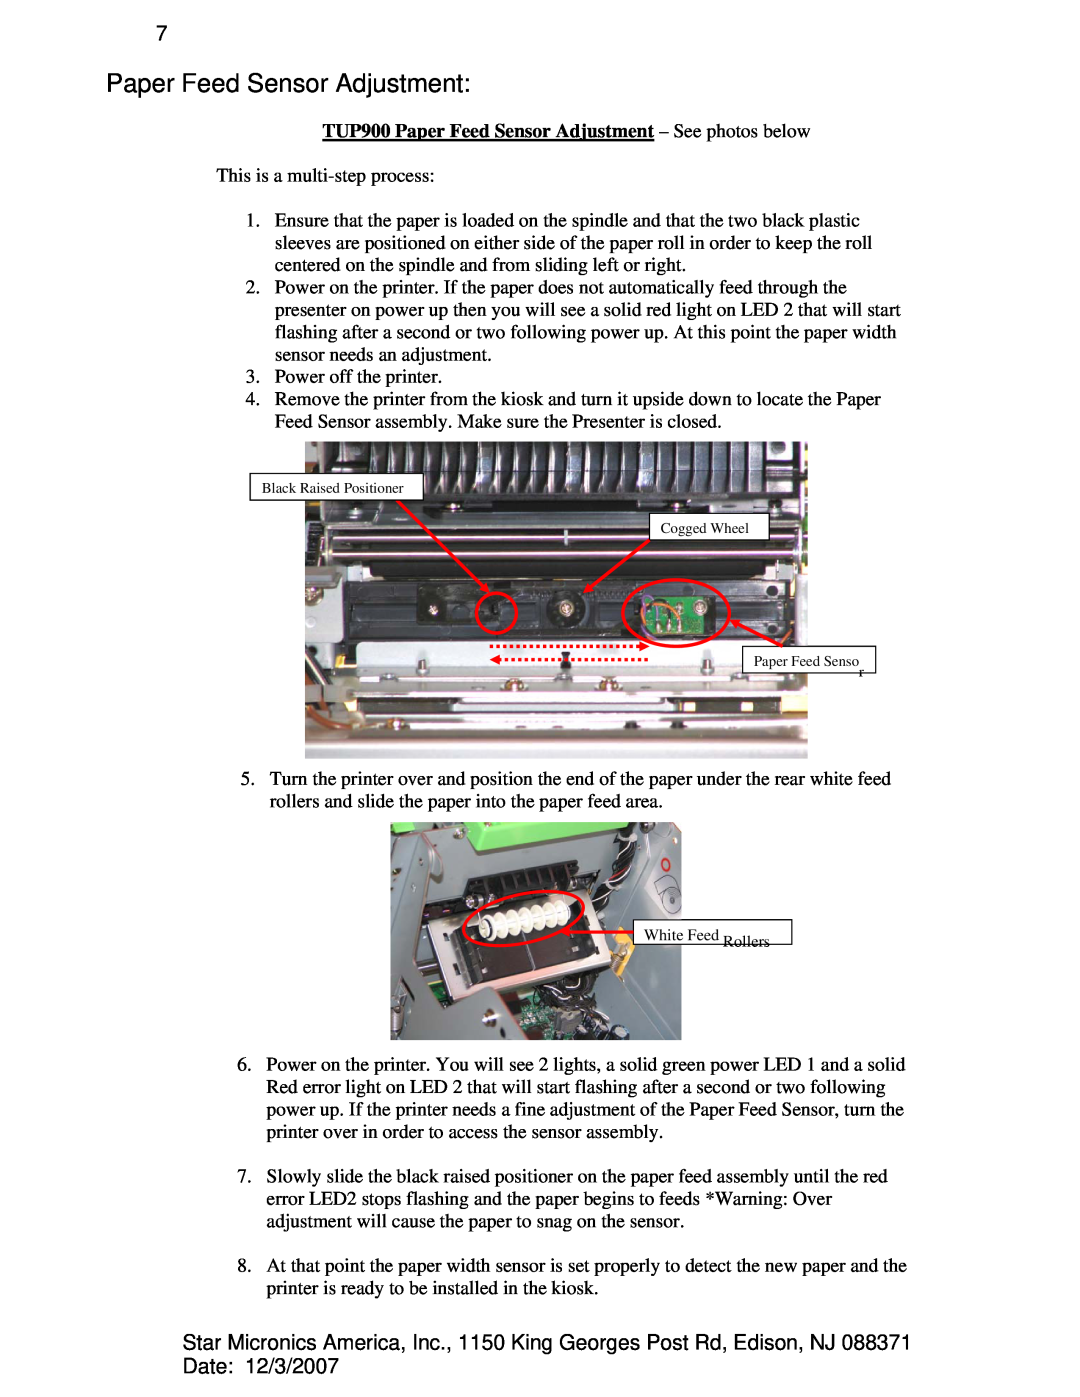 Star Micronics TUP992, TUP942 manual TUP900 Paper Feed Sensor Adjustment - See photos below 